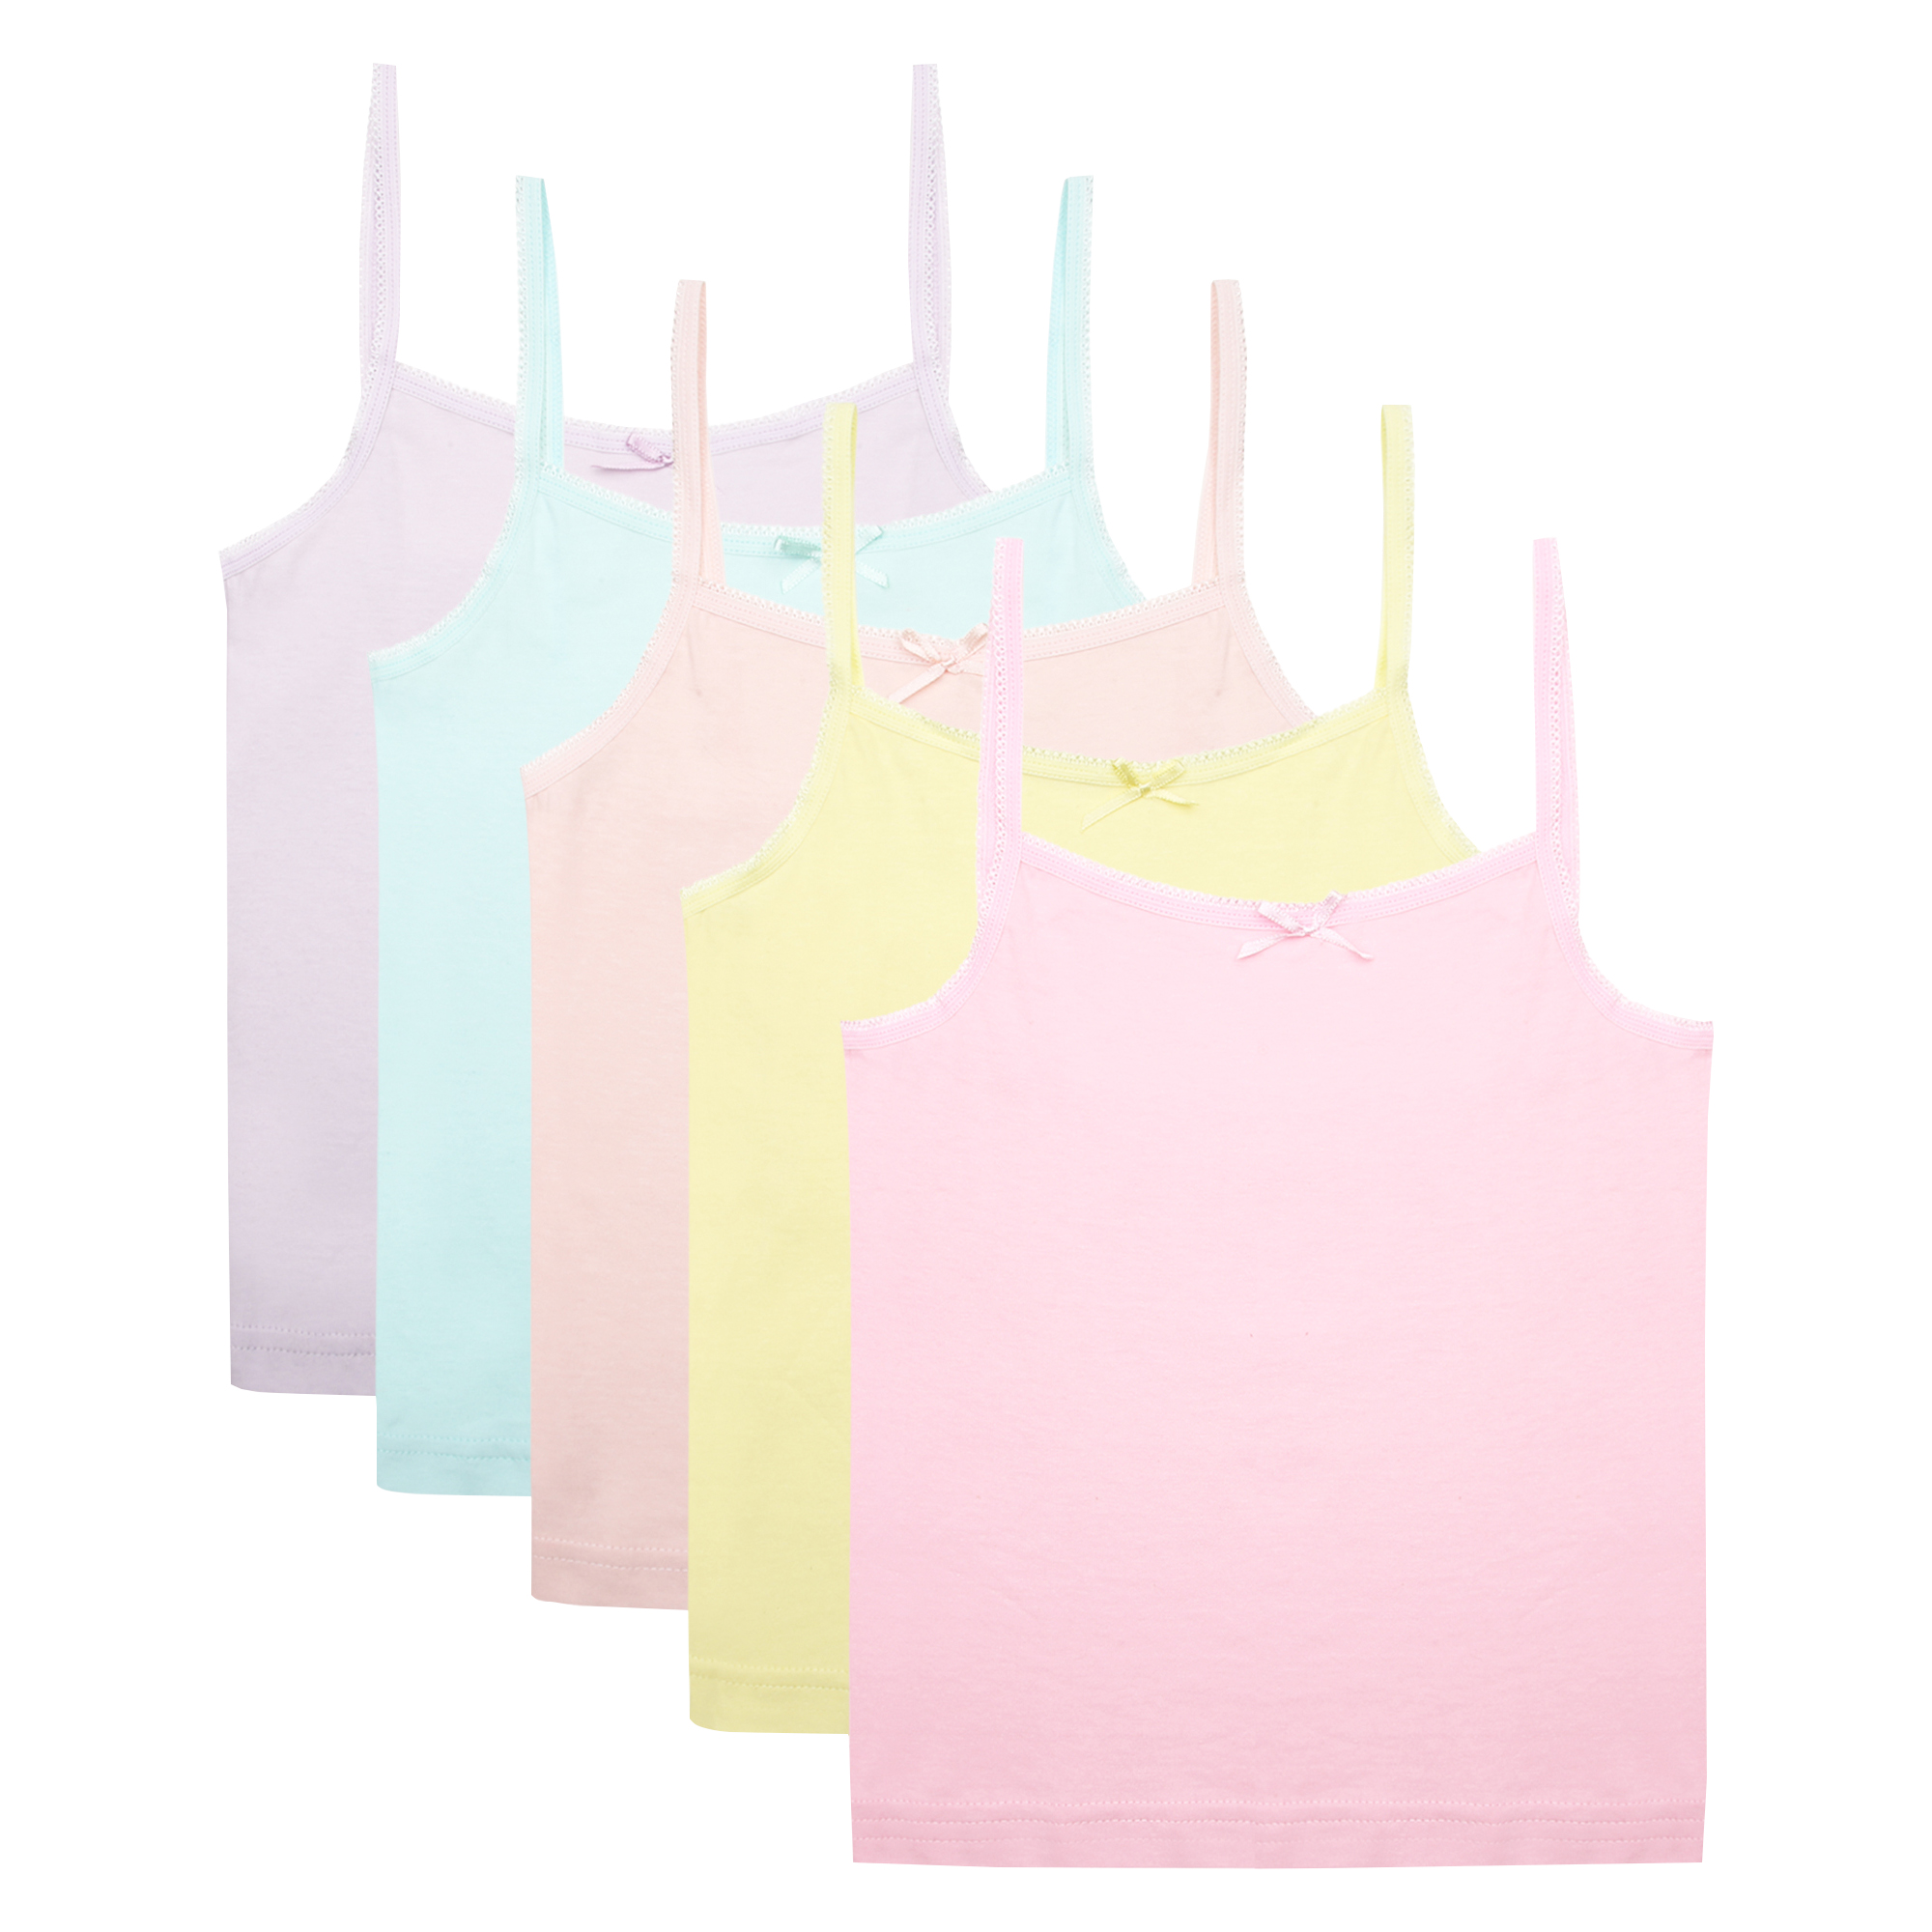 The Essentials Wardrobe Girls 5 Pack Cami Vests Underwear Sleeveless Kids 100% Cotton Size 4-13 Years